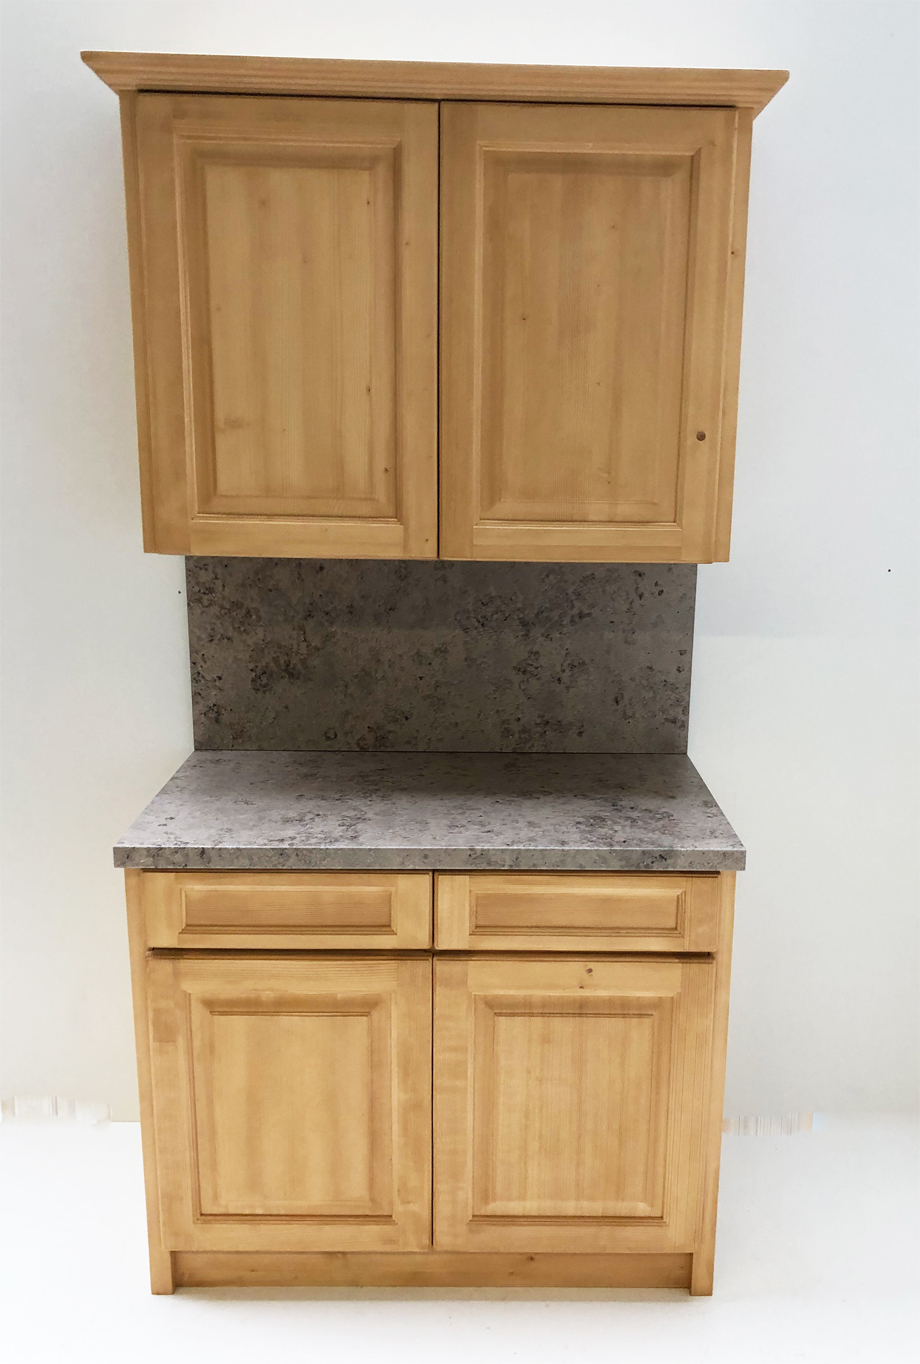 Landhausmöbel Küchen und für B100 cm Zeile mit Anrichte HPL Platte, Spüle, Oberschrank Kühlschrank